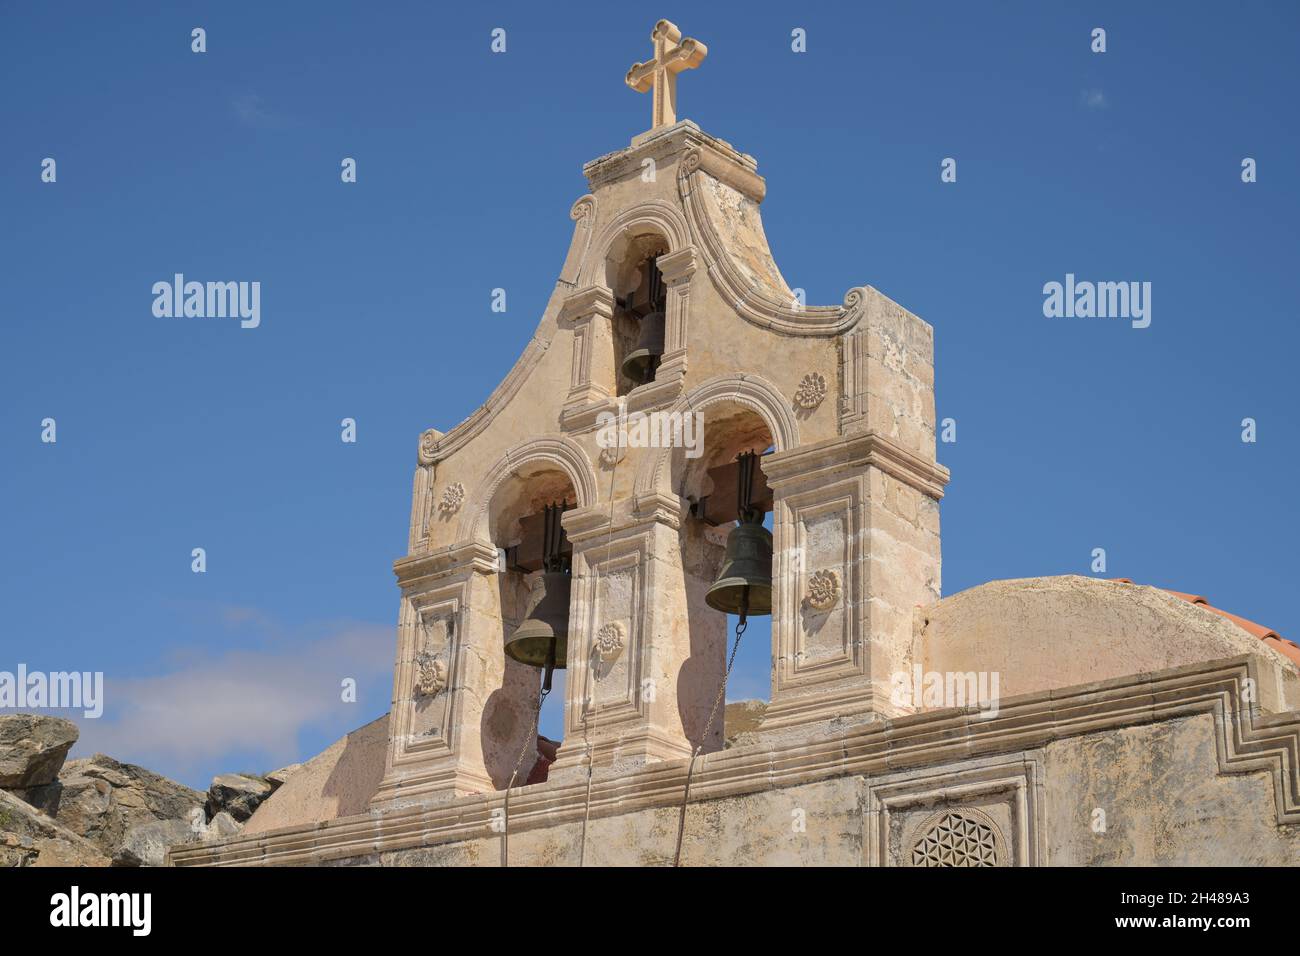 Glockenstuhl, Kapelle, Kloster Preveli, Kreta, Griechenland Foto Stock